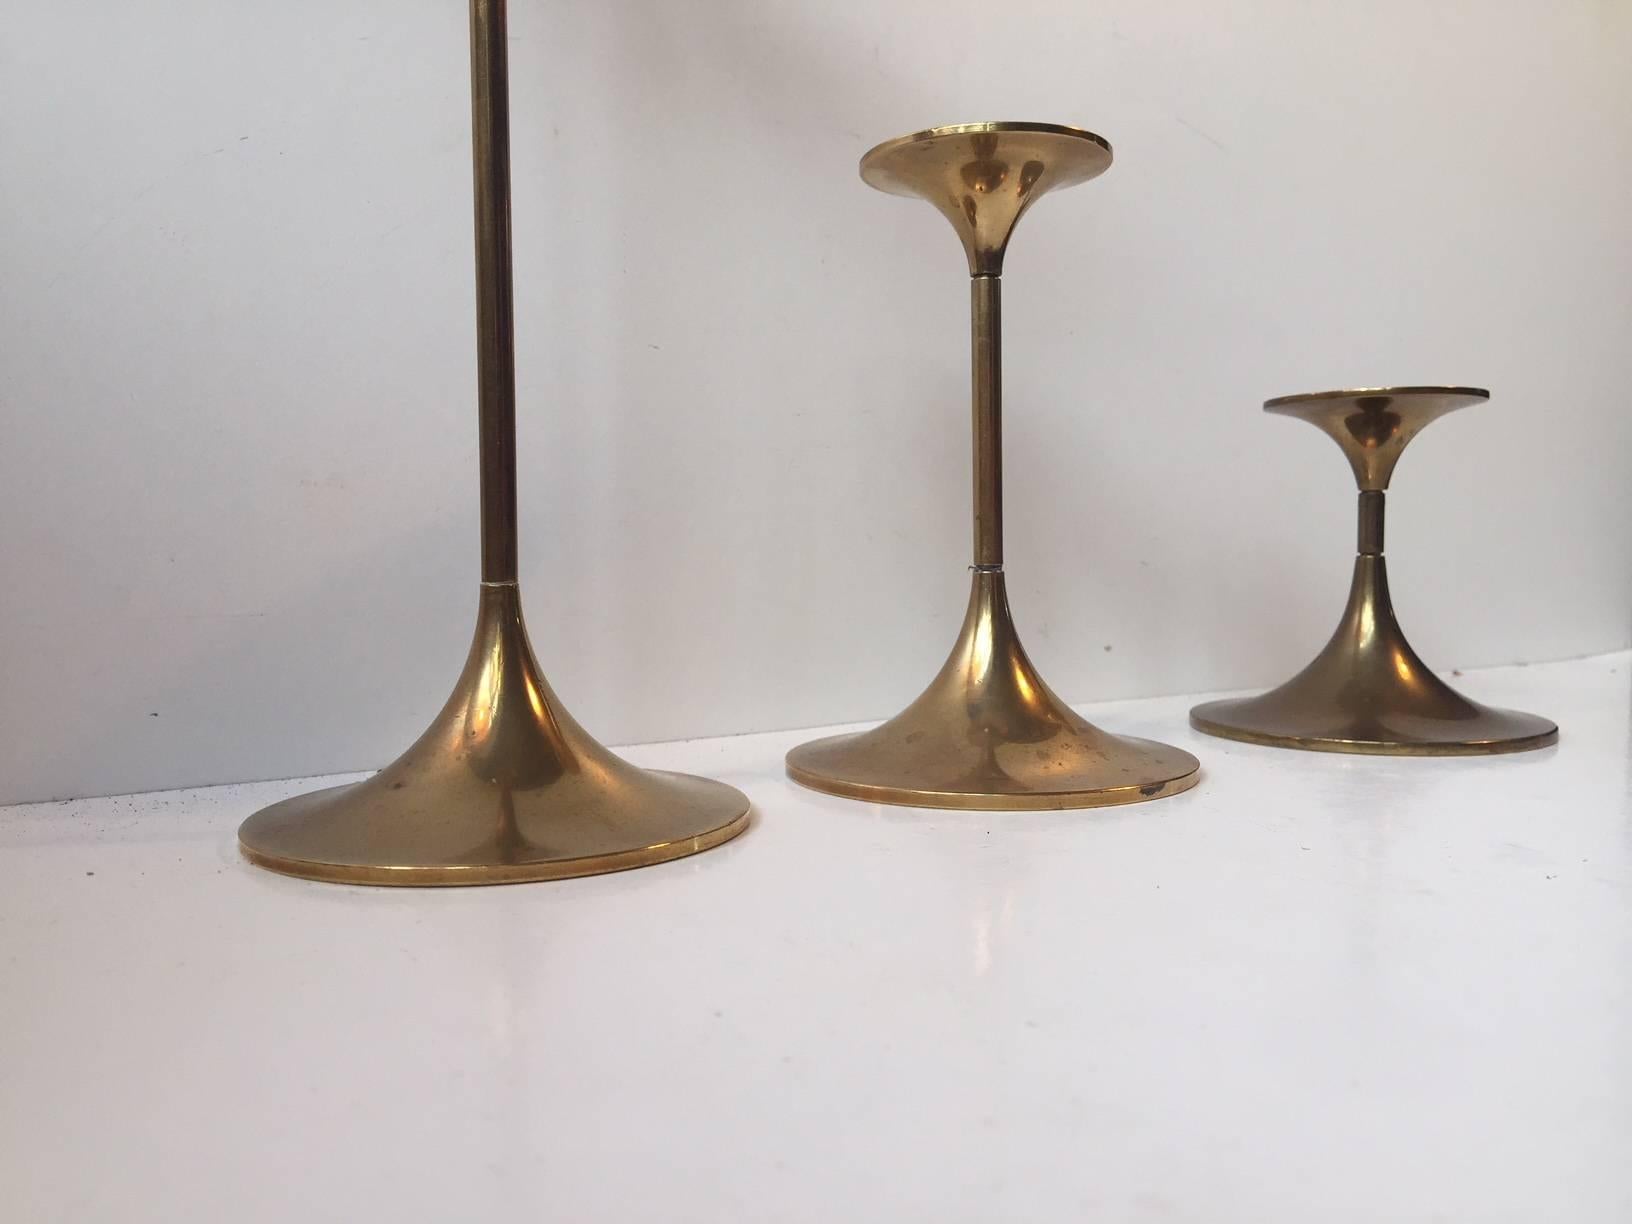 Un ensemble de trois chandeliers en laiton massif conçus par l'architecte Max Bruel. Le modèle s'appelle Hi-Fi et a été fabriqué par Torben Orskov au Danemark dans les années 1960. Ces chandeliers minimalistes sont dotés d'articulations dévissables